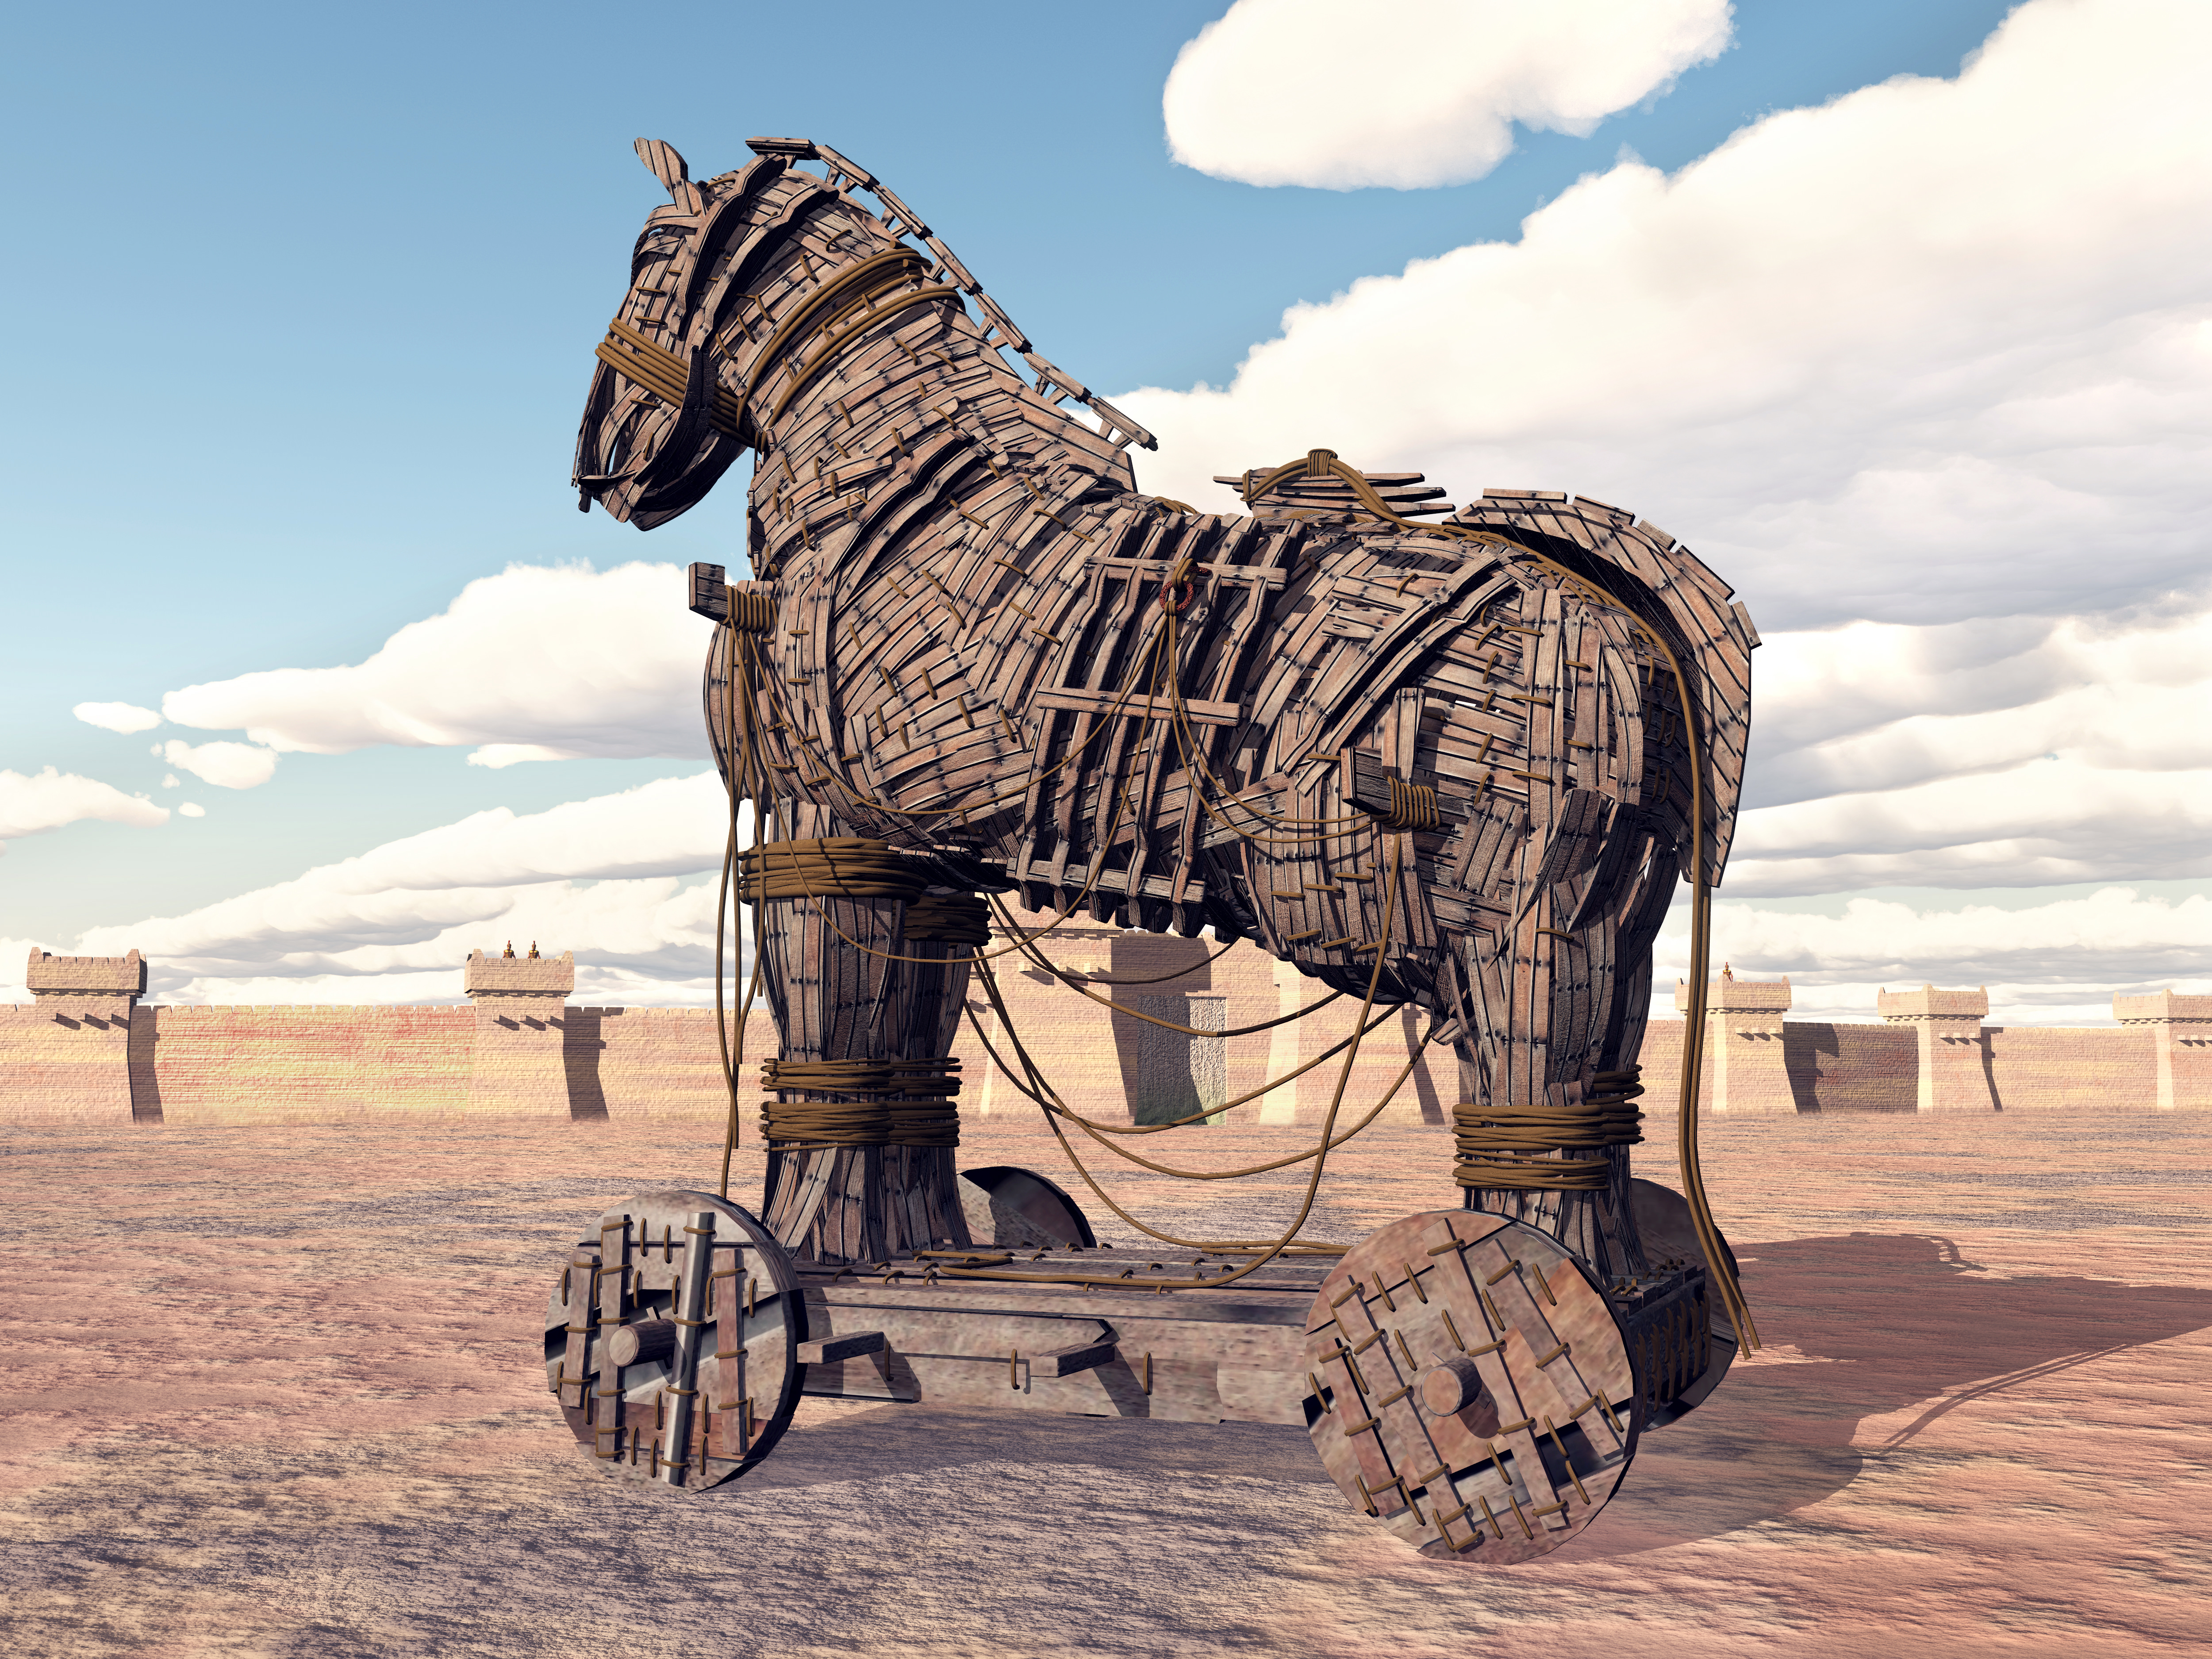 trojan horse myth